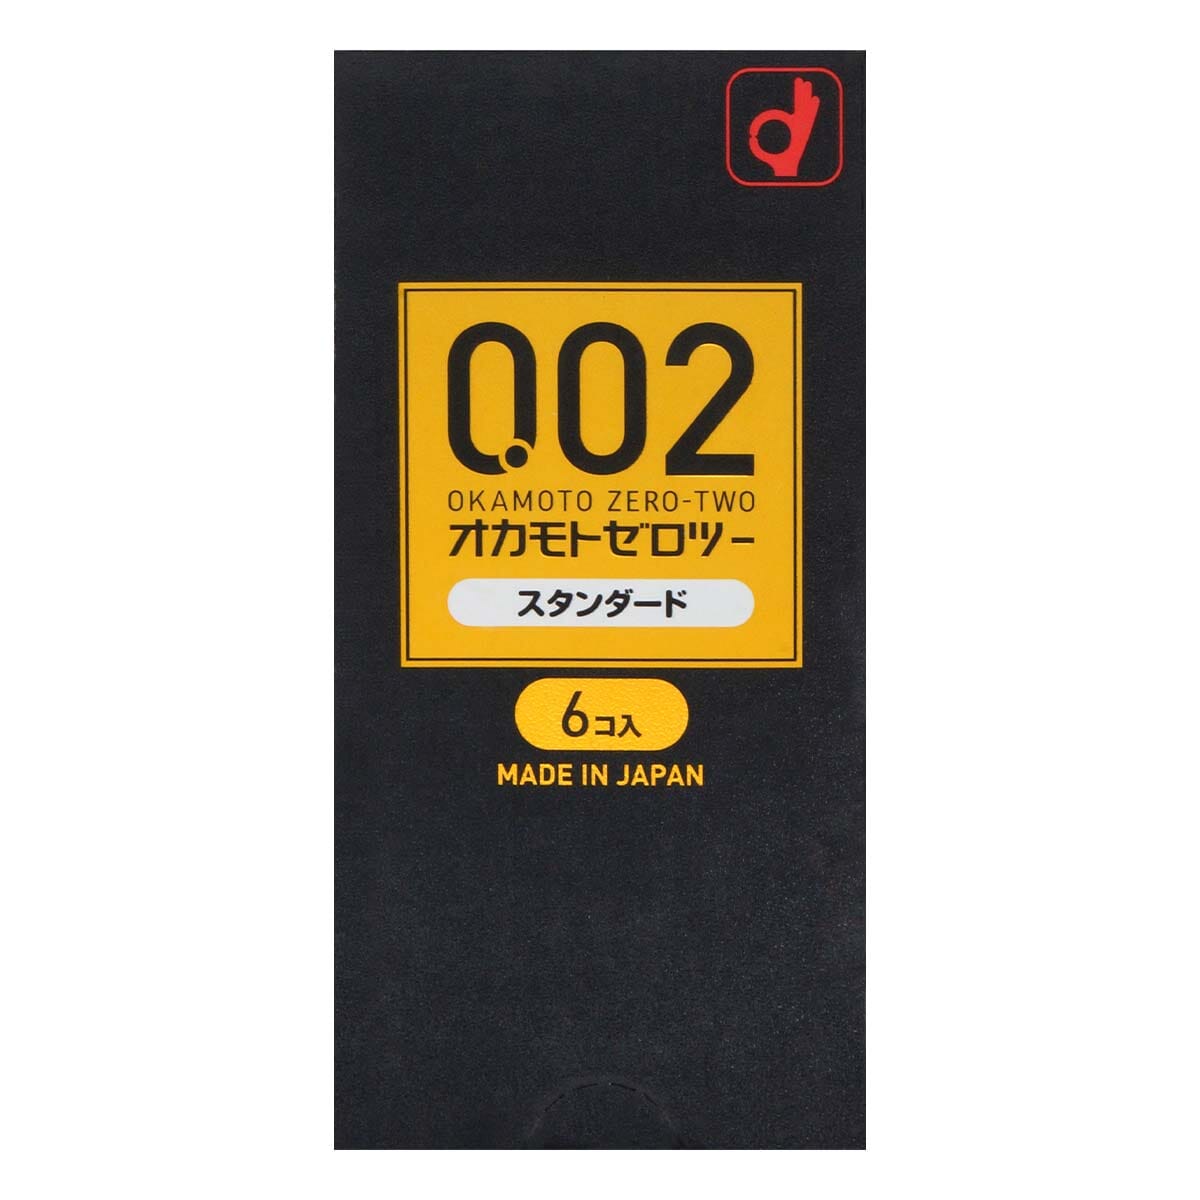 OKAMOTO 薄度均一 0.02 日本版 PU 安全套 6 片裝 購買